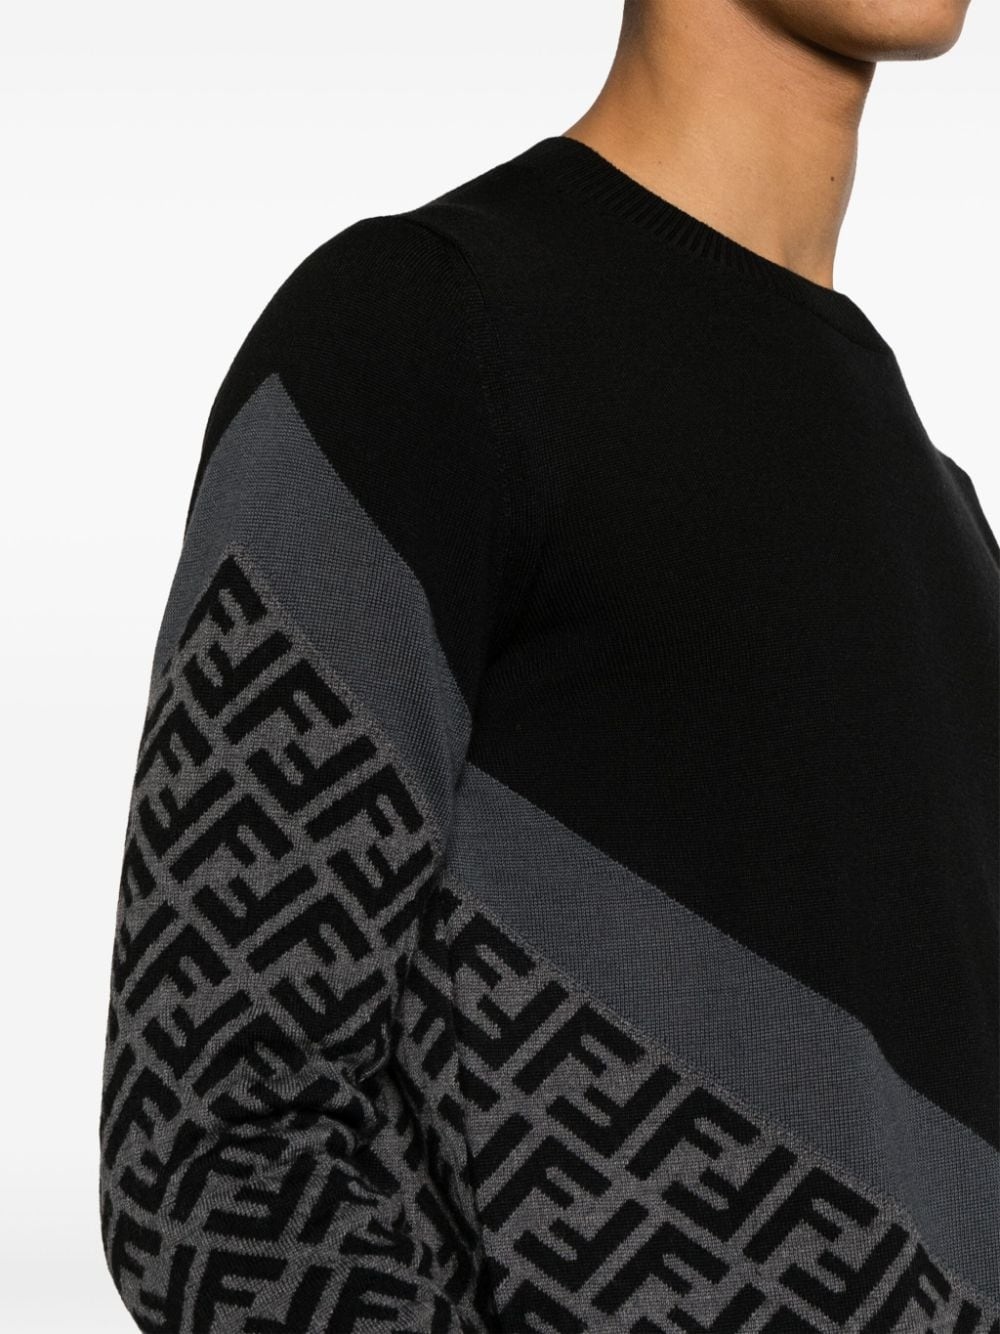 FF-pattern intarsia-knit jumper - 5